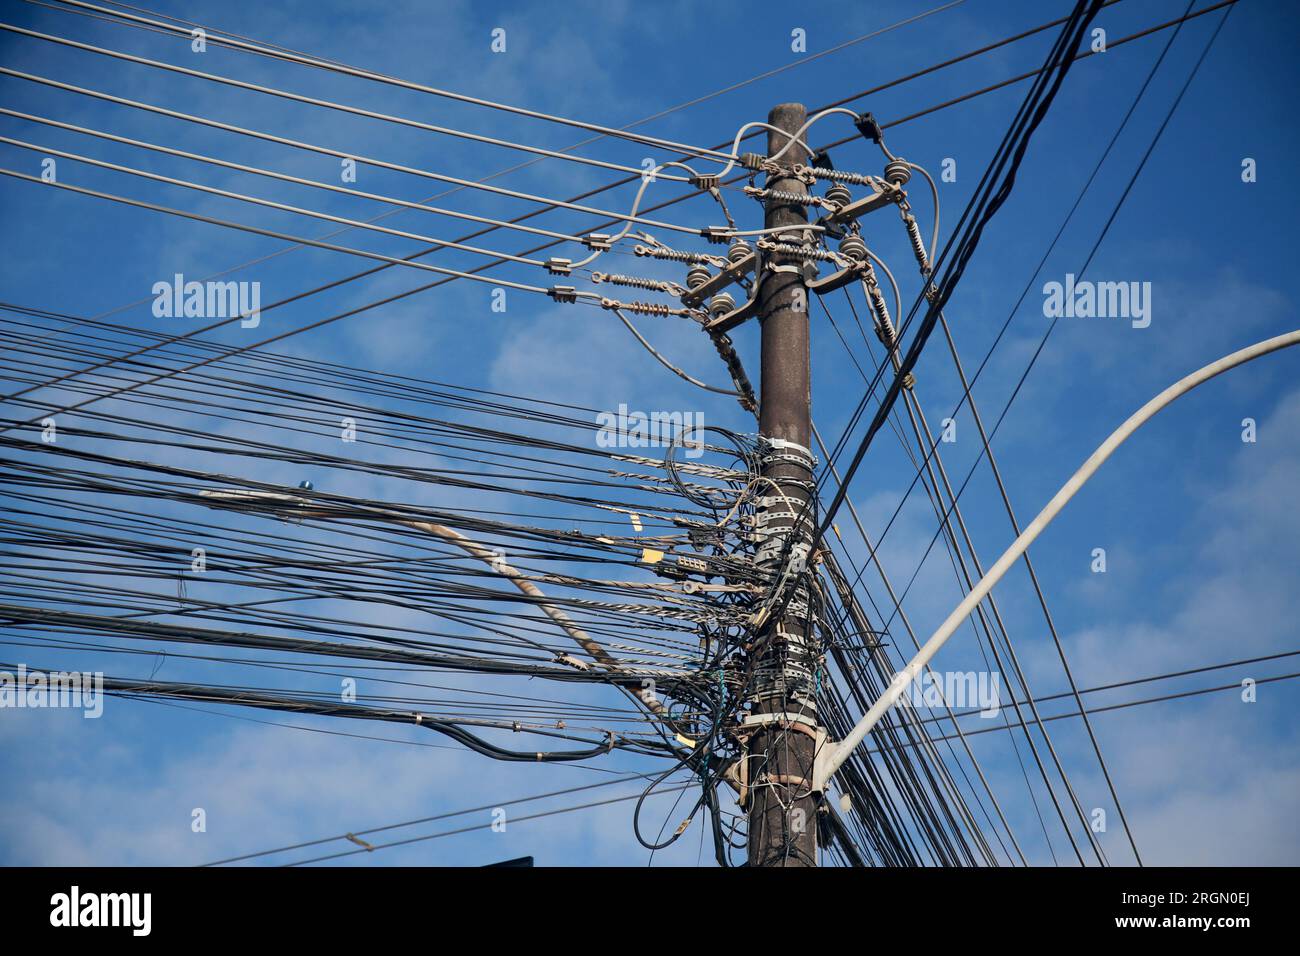 salvador, bahia, brasilien - 25. august 2022: Elektrische Netzwerkverkabelung und TV-Netzwerkkabel auf einem Pol des elektrischen Netzes in der Stadt Salvador. Stockfoto